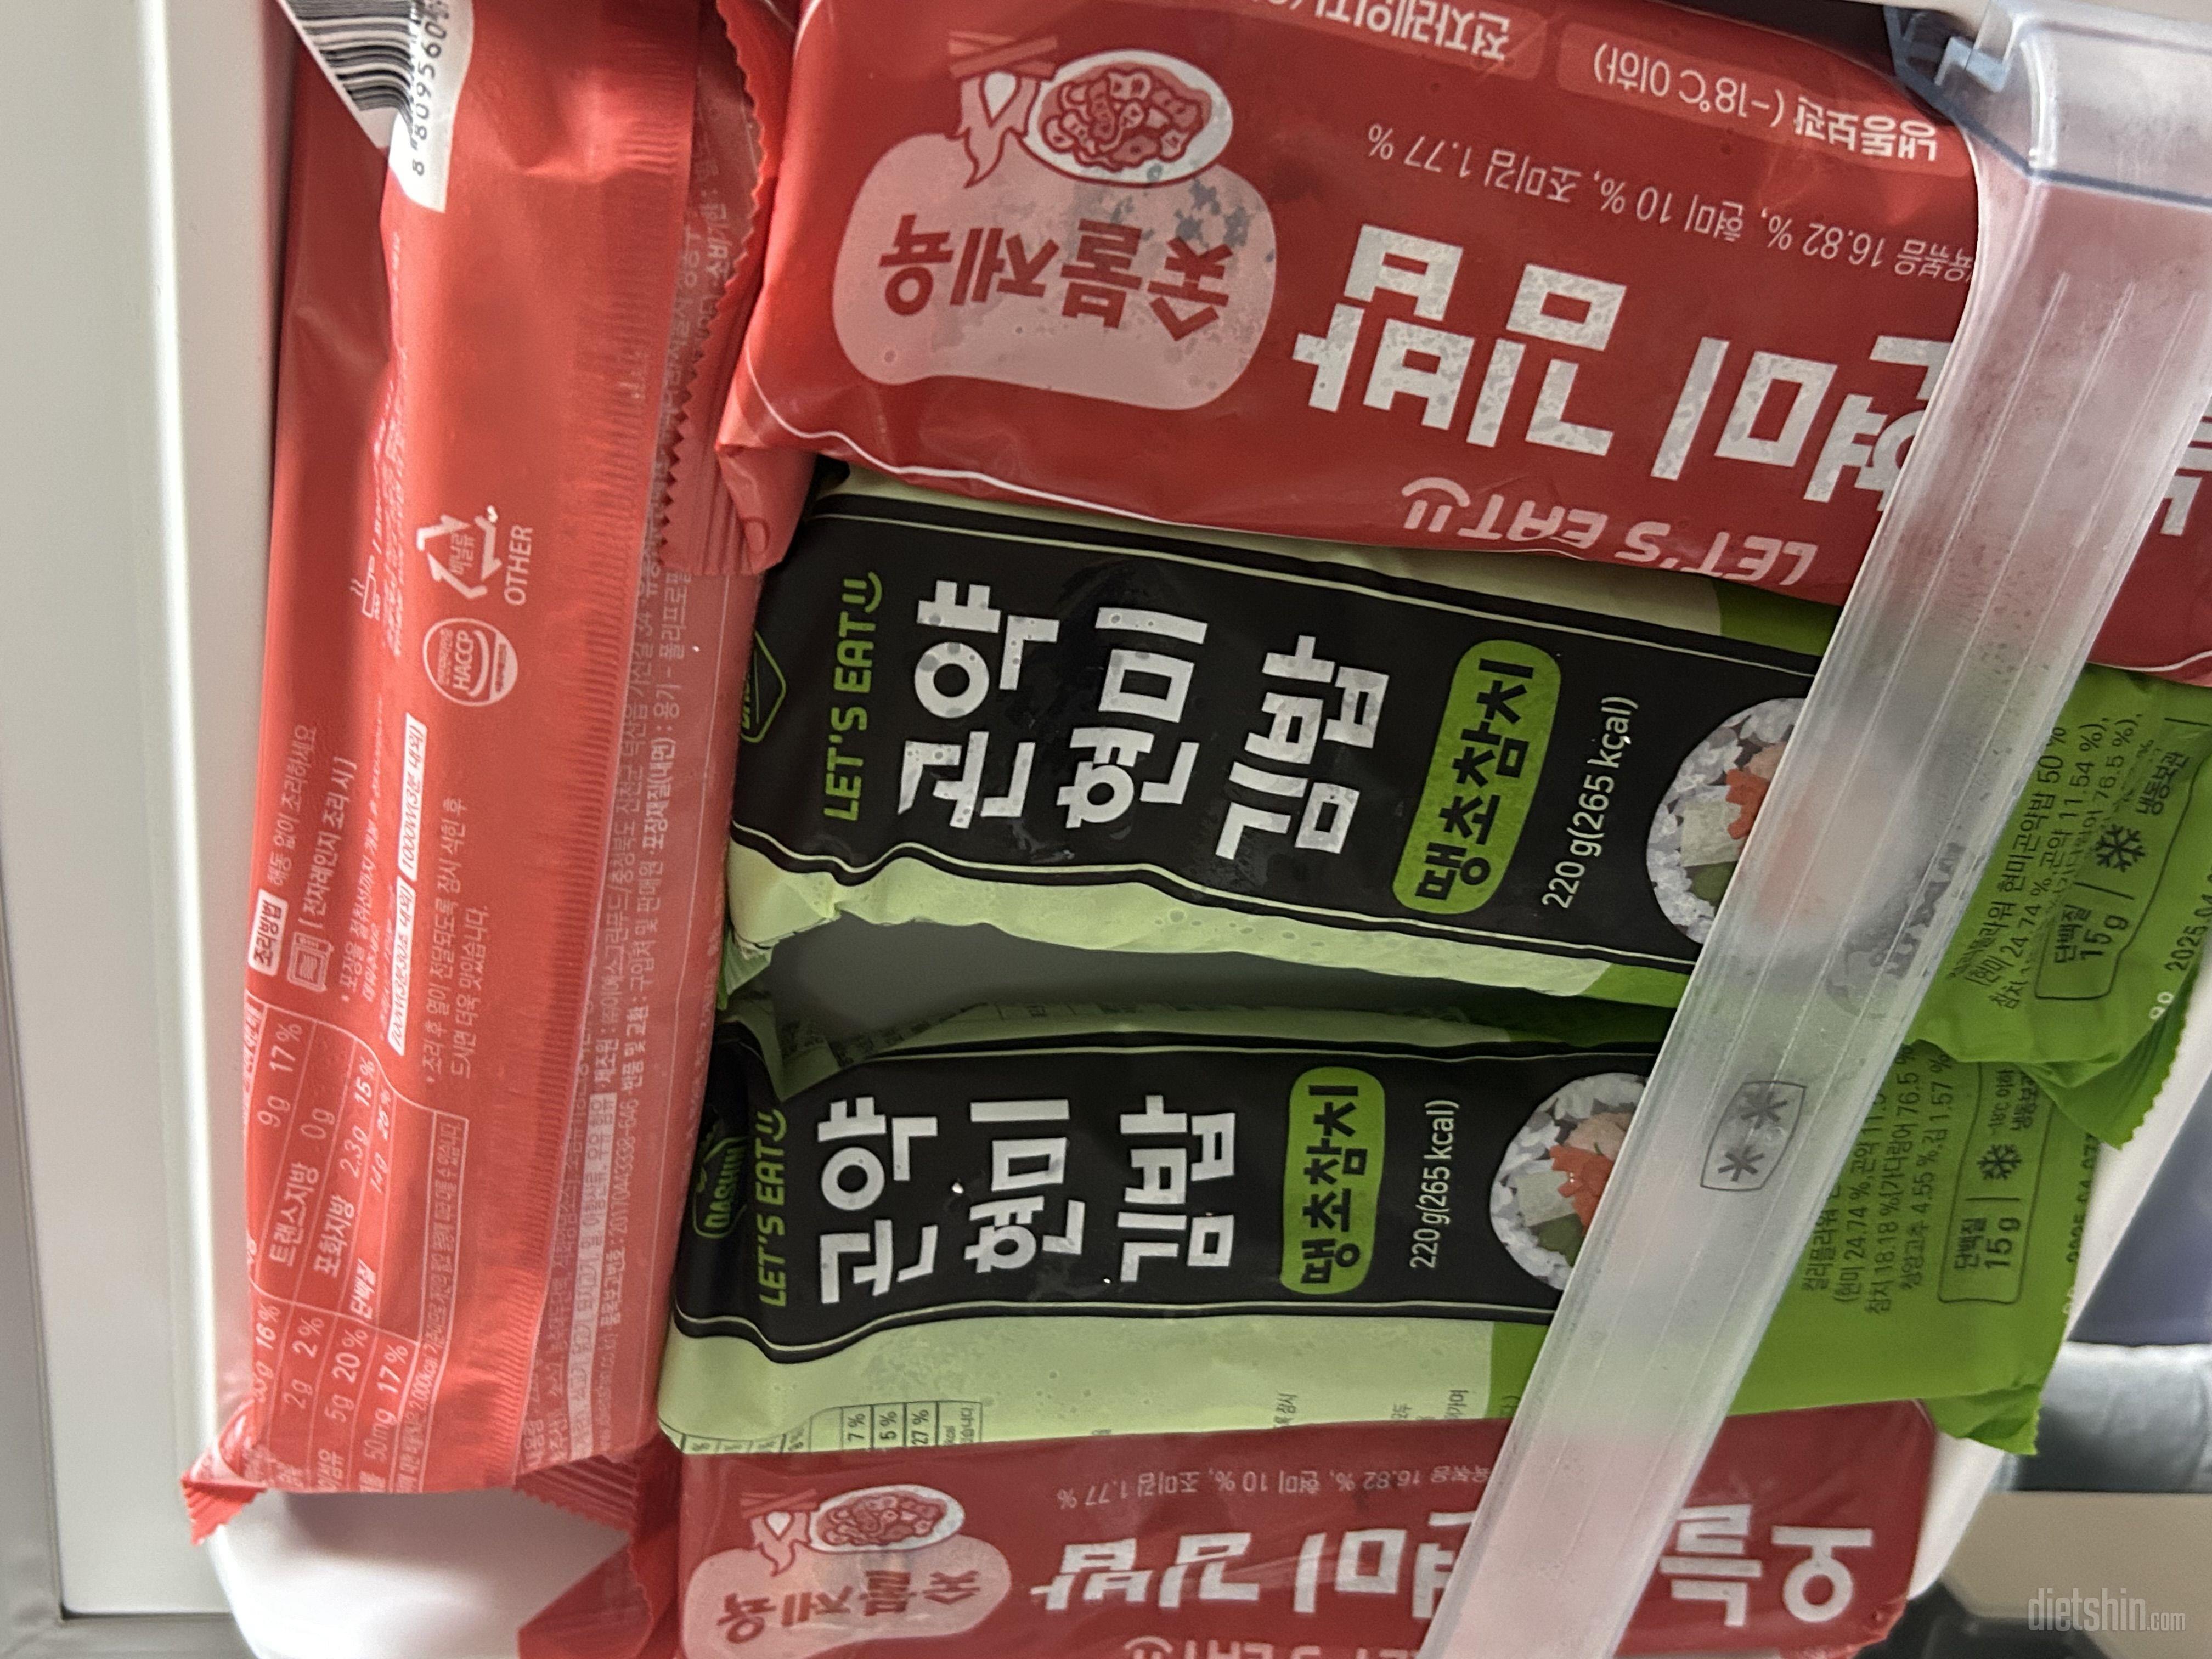 다이어트 중에 김밥이 넘 땡겨서 사봤